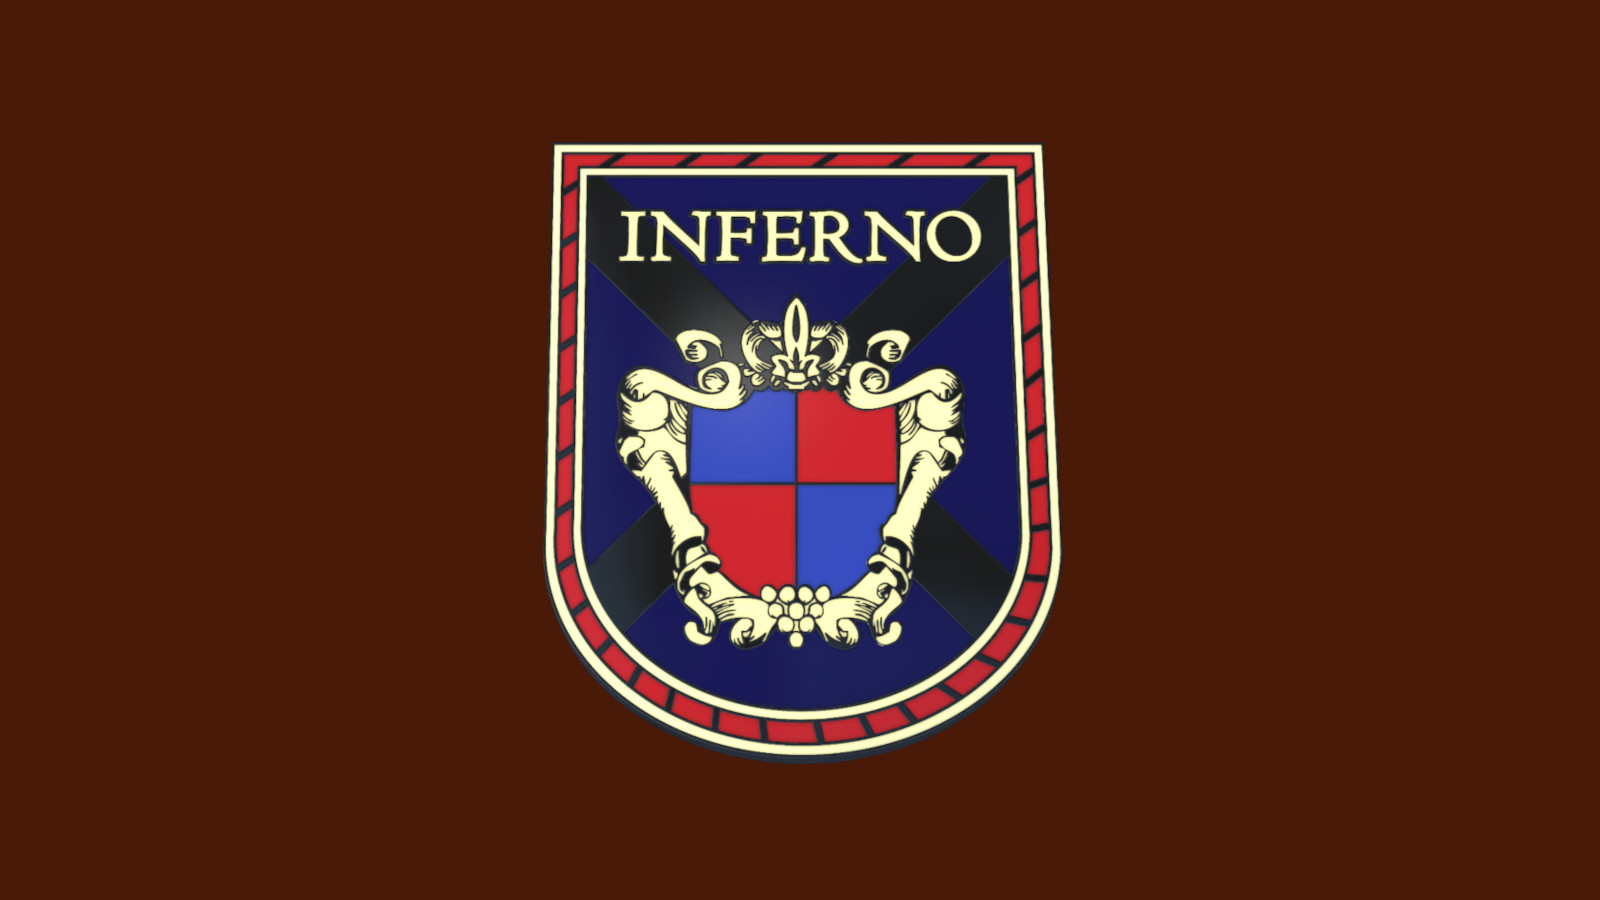 CS:GO - Series 3 - Inferno 2 Collectible Pin